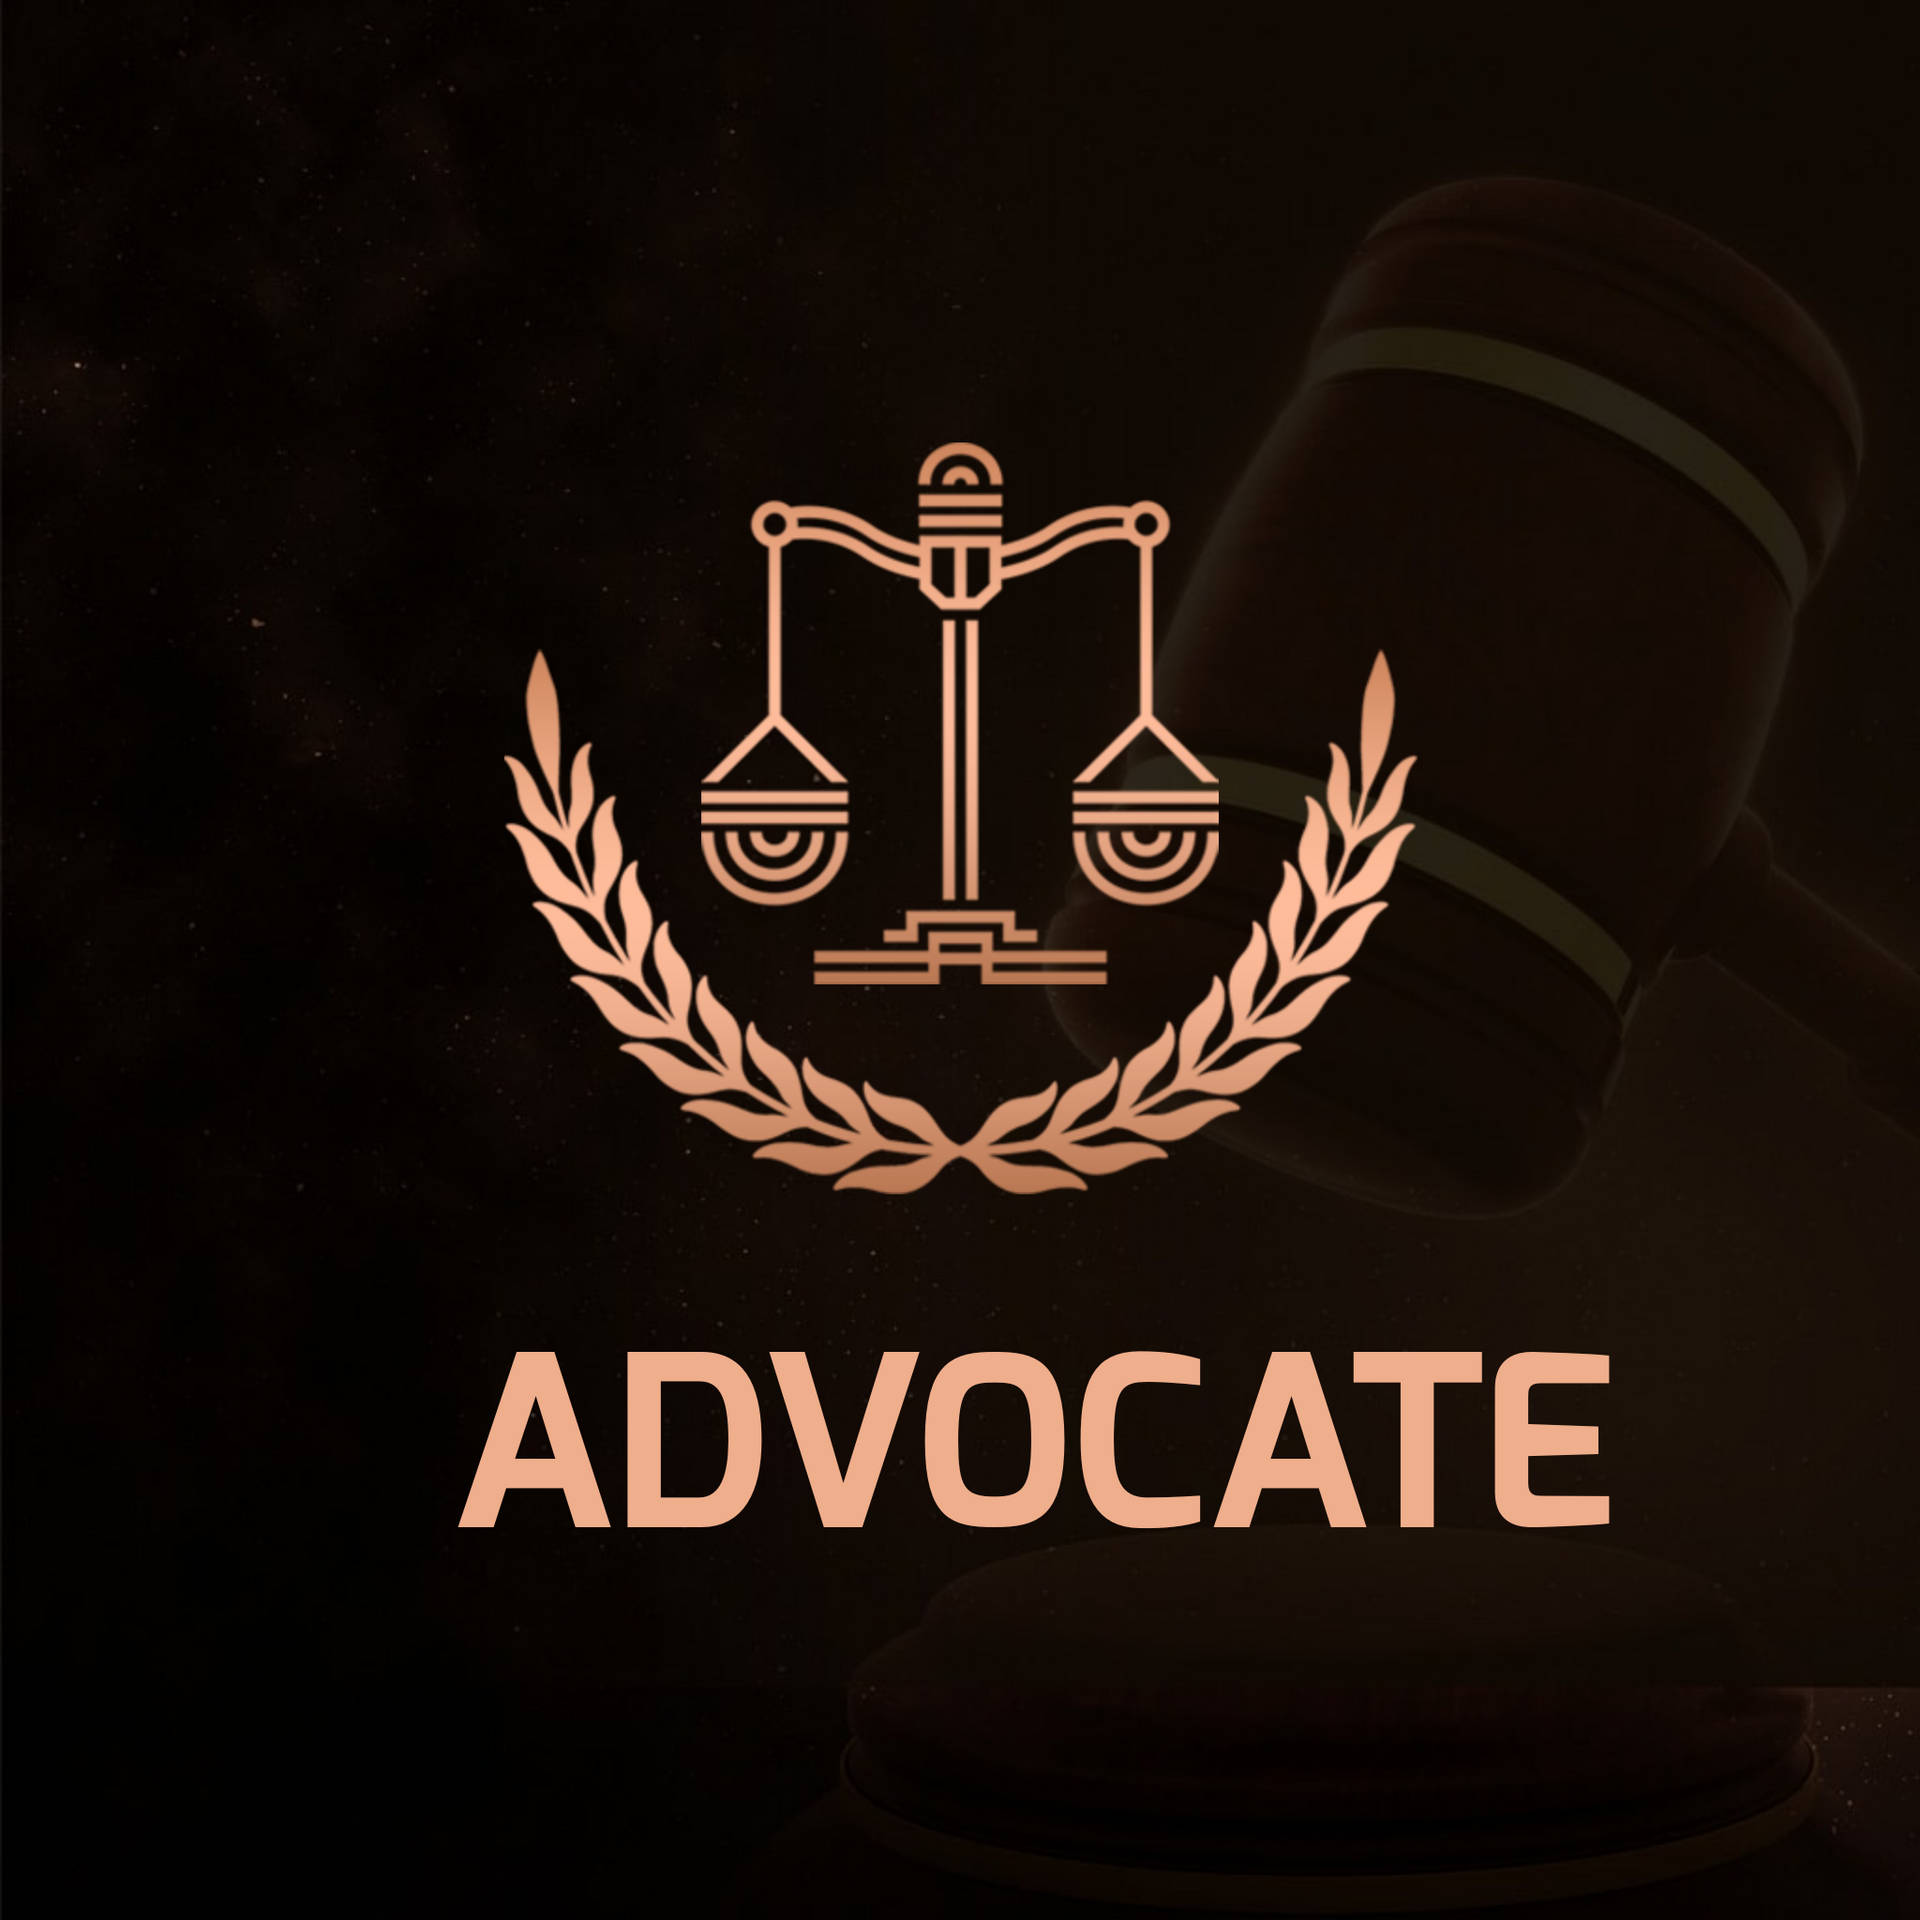 Advocate Logo In Black Wallpaper